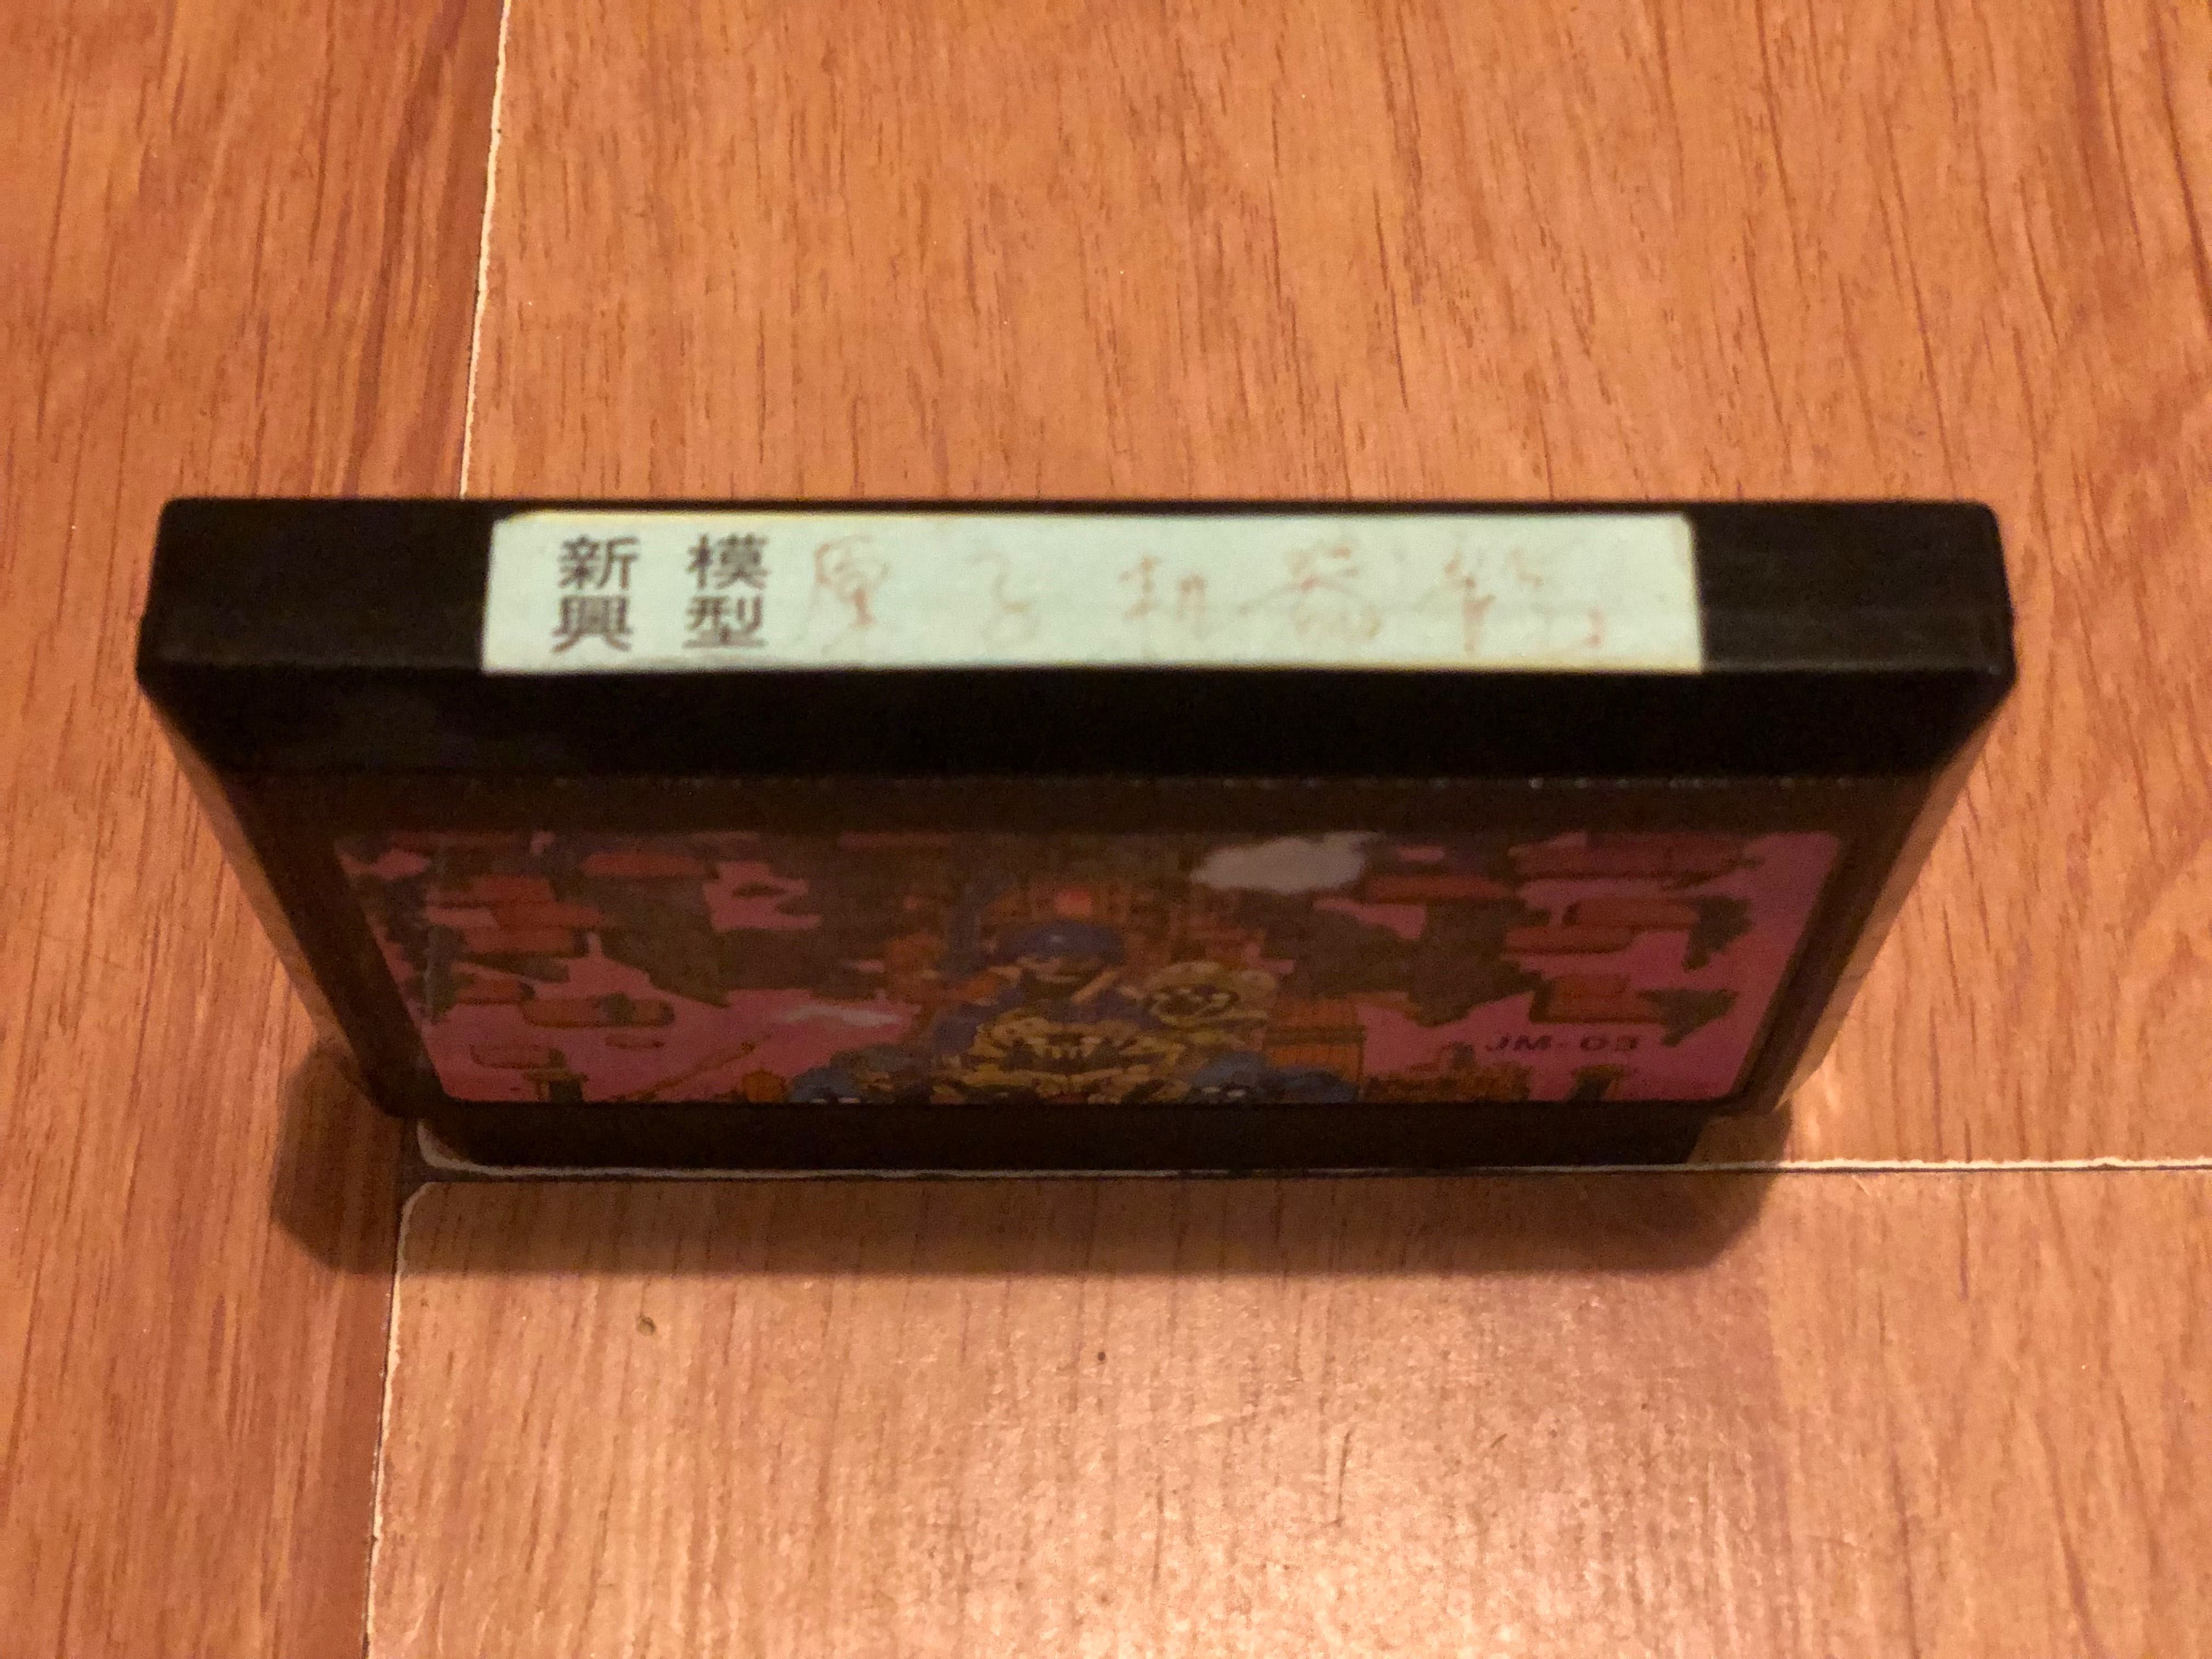 Power Blazer, Unikat, Famicom